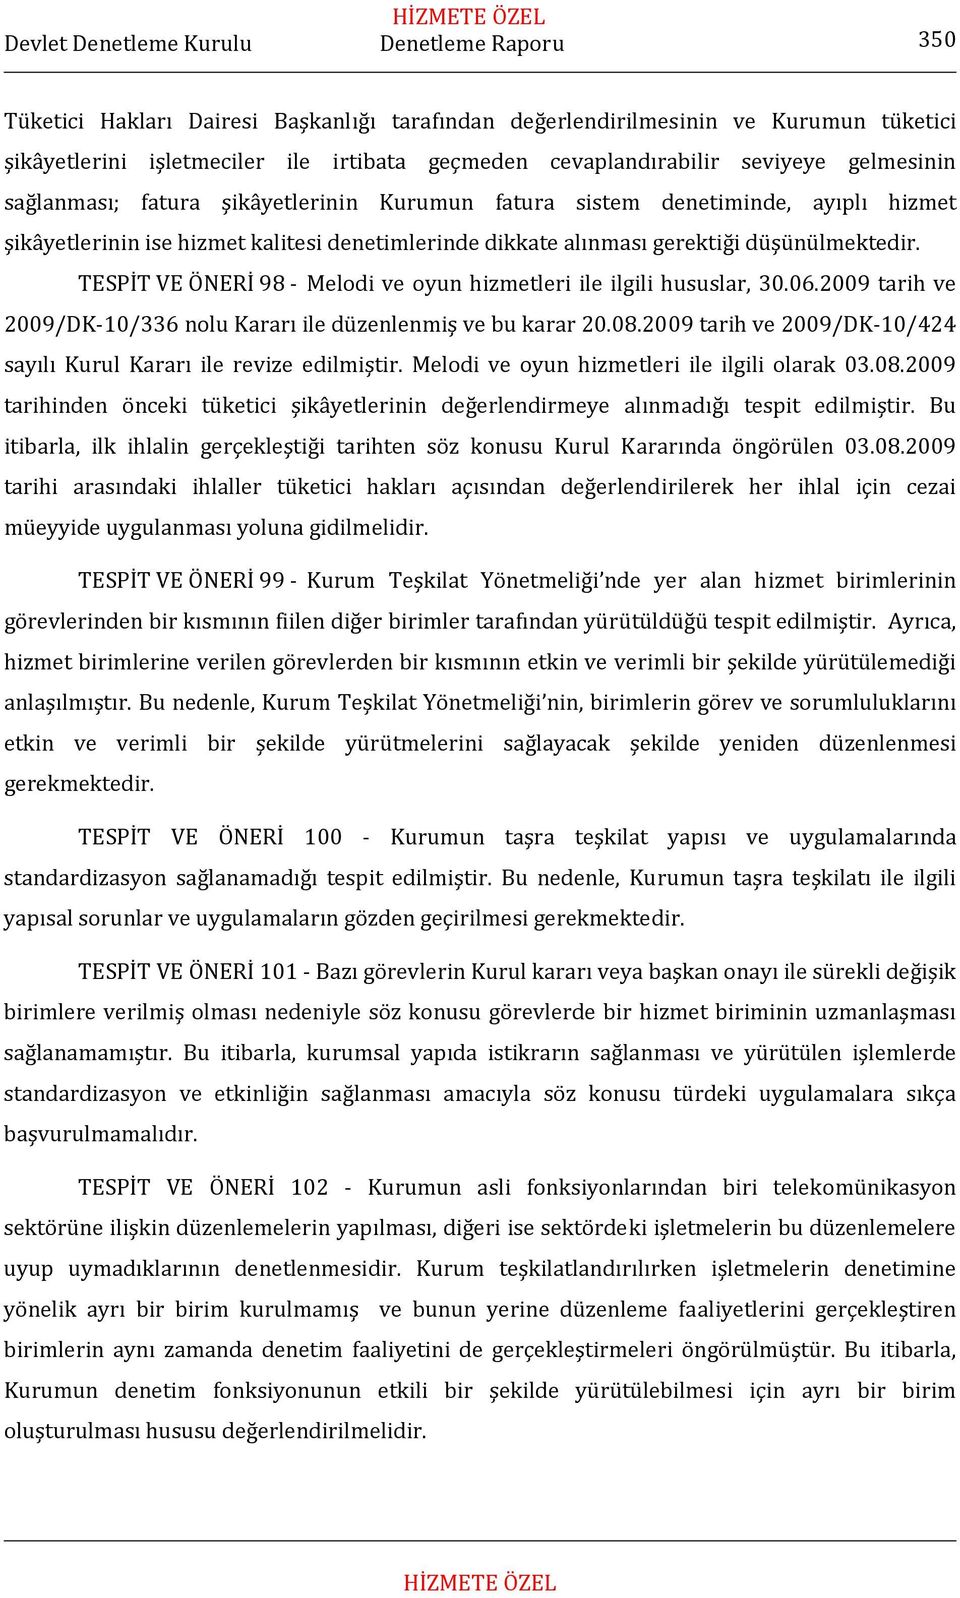 TESPİT VE ÖNERİ 98 Melodi ve oyun hizmetleri ile ilgili hususlar, 30.06.2009 tarih ve 2009/DK 10/336 nolu Kararı ile düzenlenmiş ve bu karar 20.08.